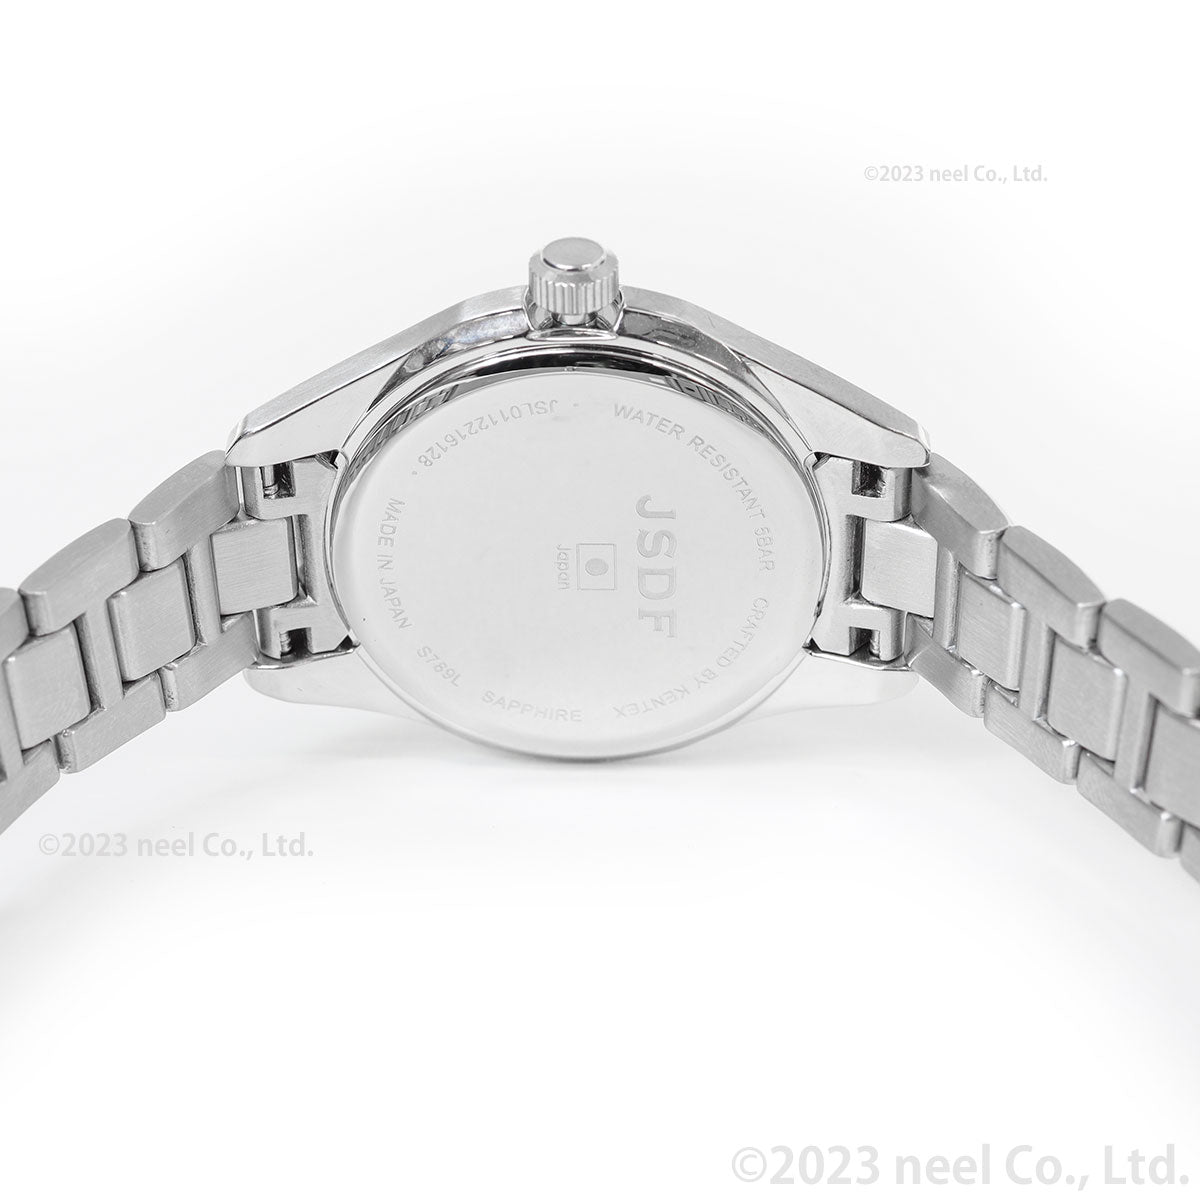 ケンテックス KENTEX JSDF 陸海空統合モデル 腕時計 時計 レディース 日本製 S789L-4